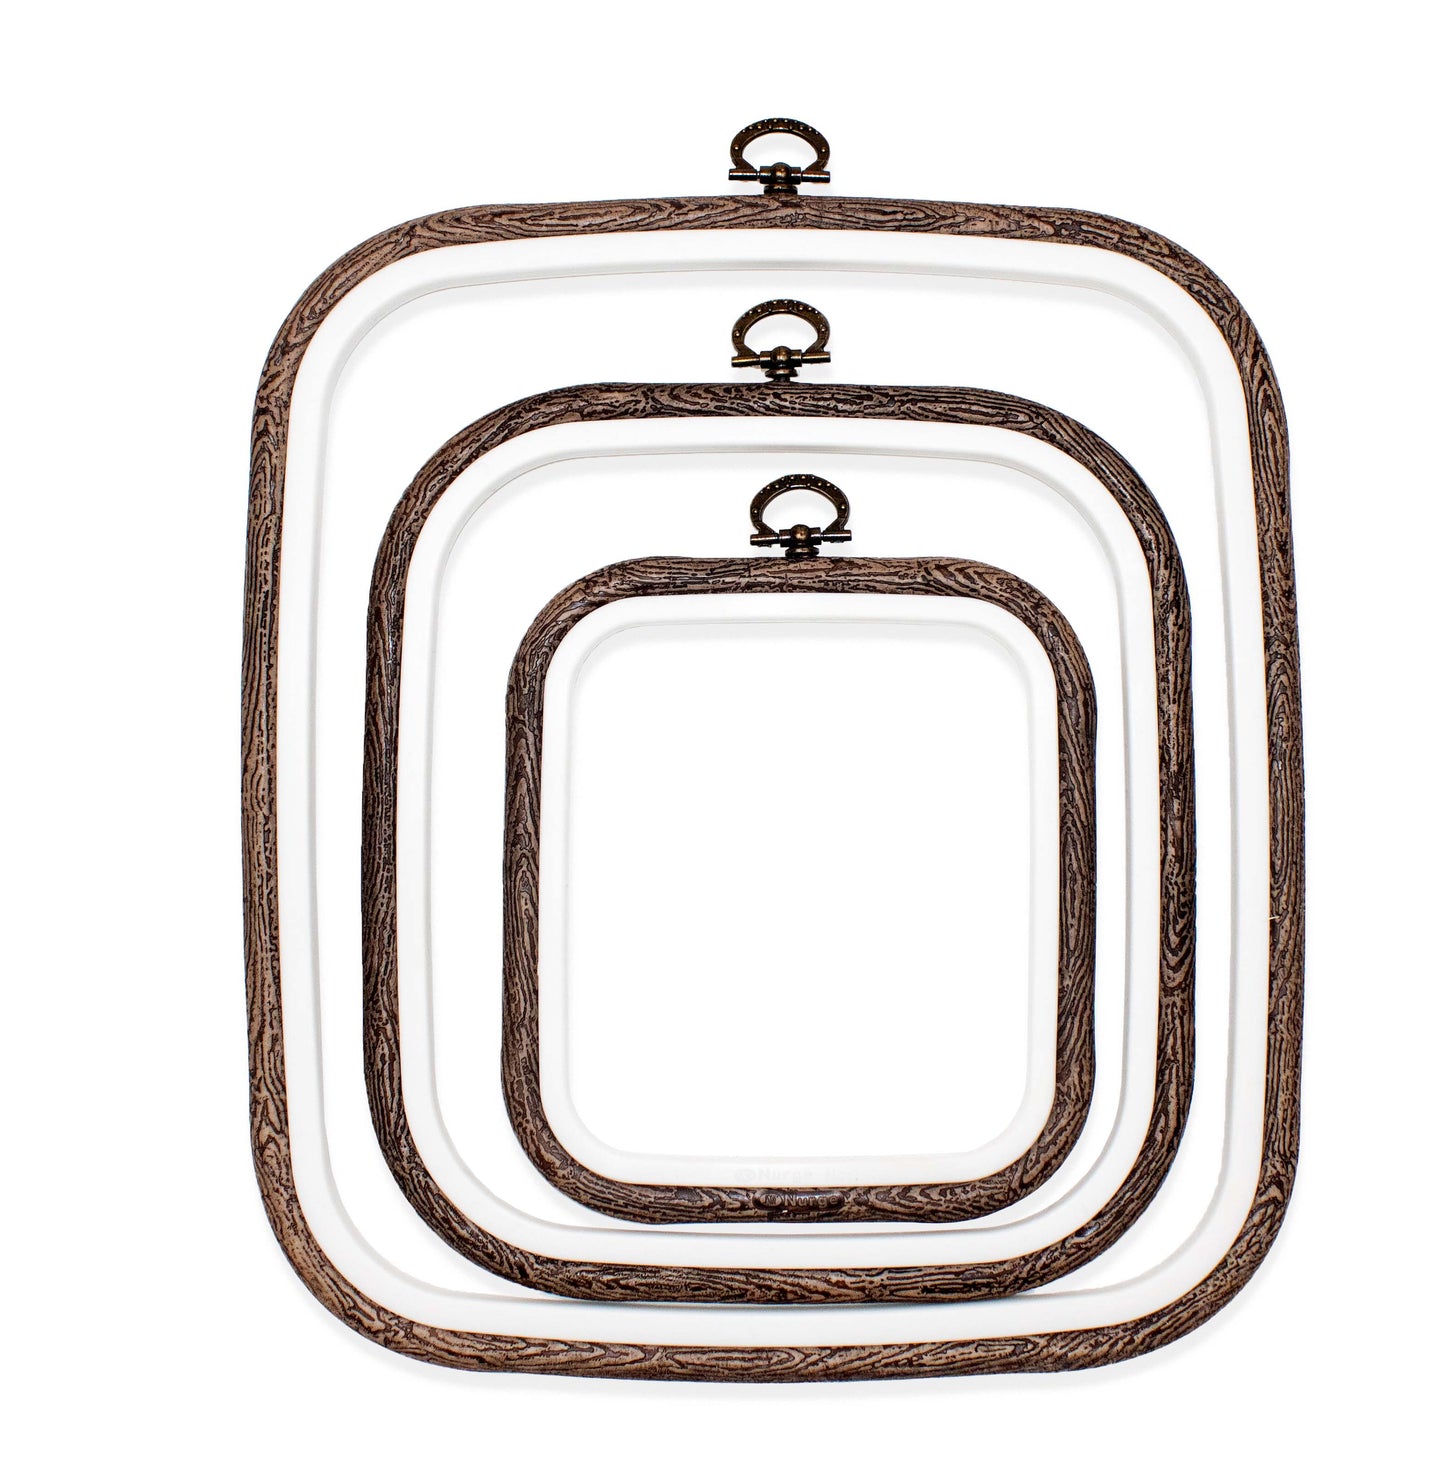 Brown Square Embroidery Hoop - Nurge Flexible Cross Stitch Hoop